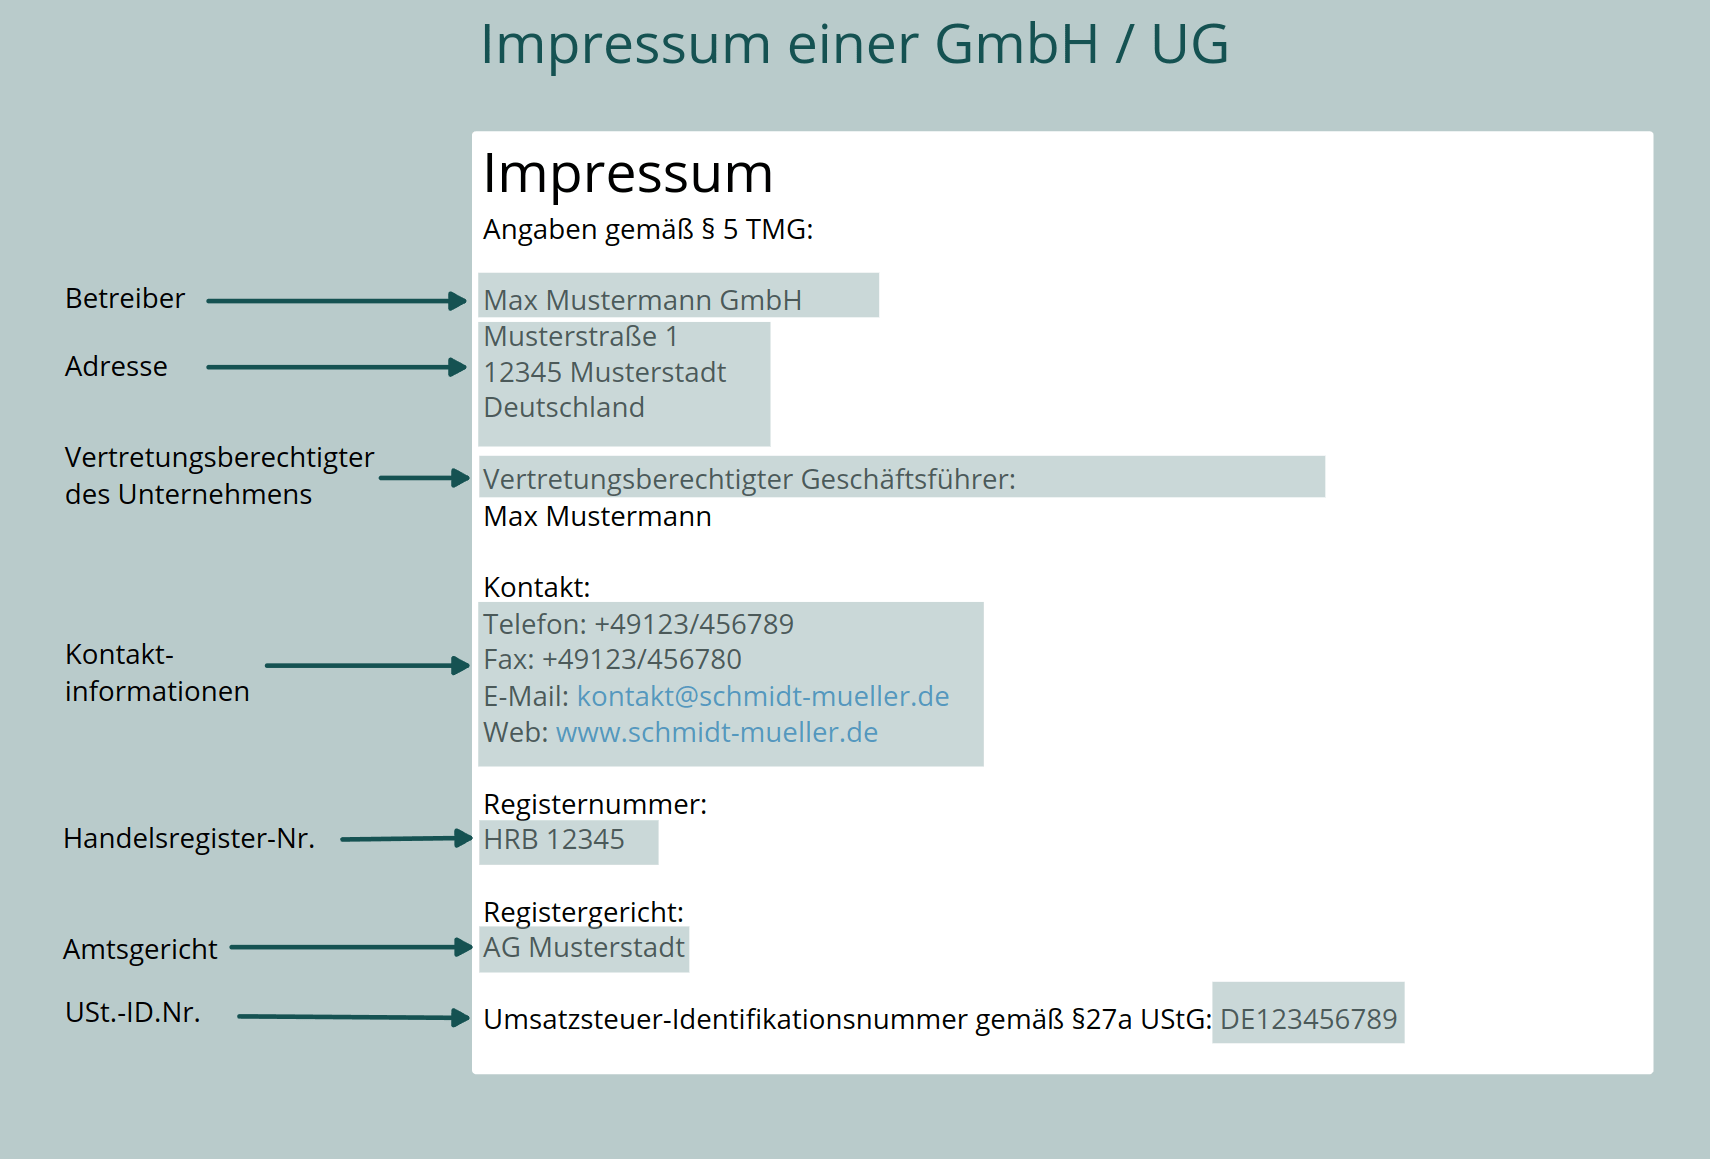 Impressum einer GmbH oder UG